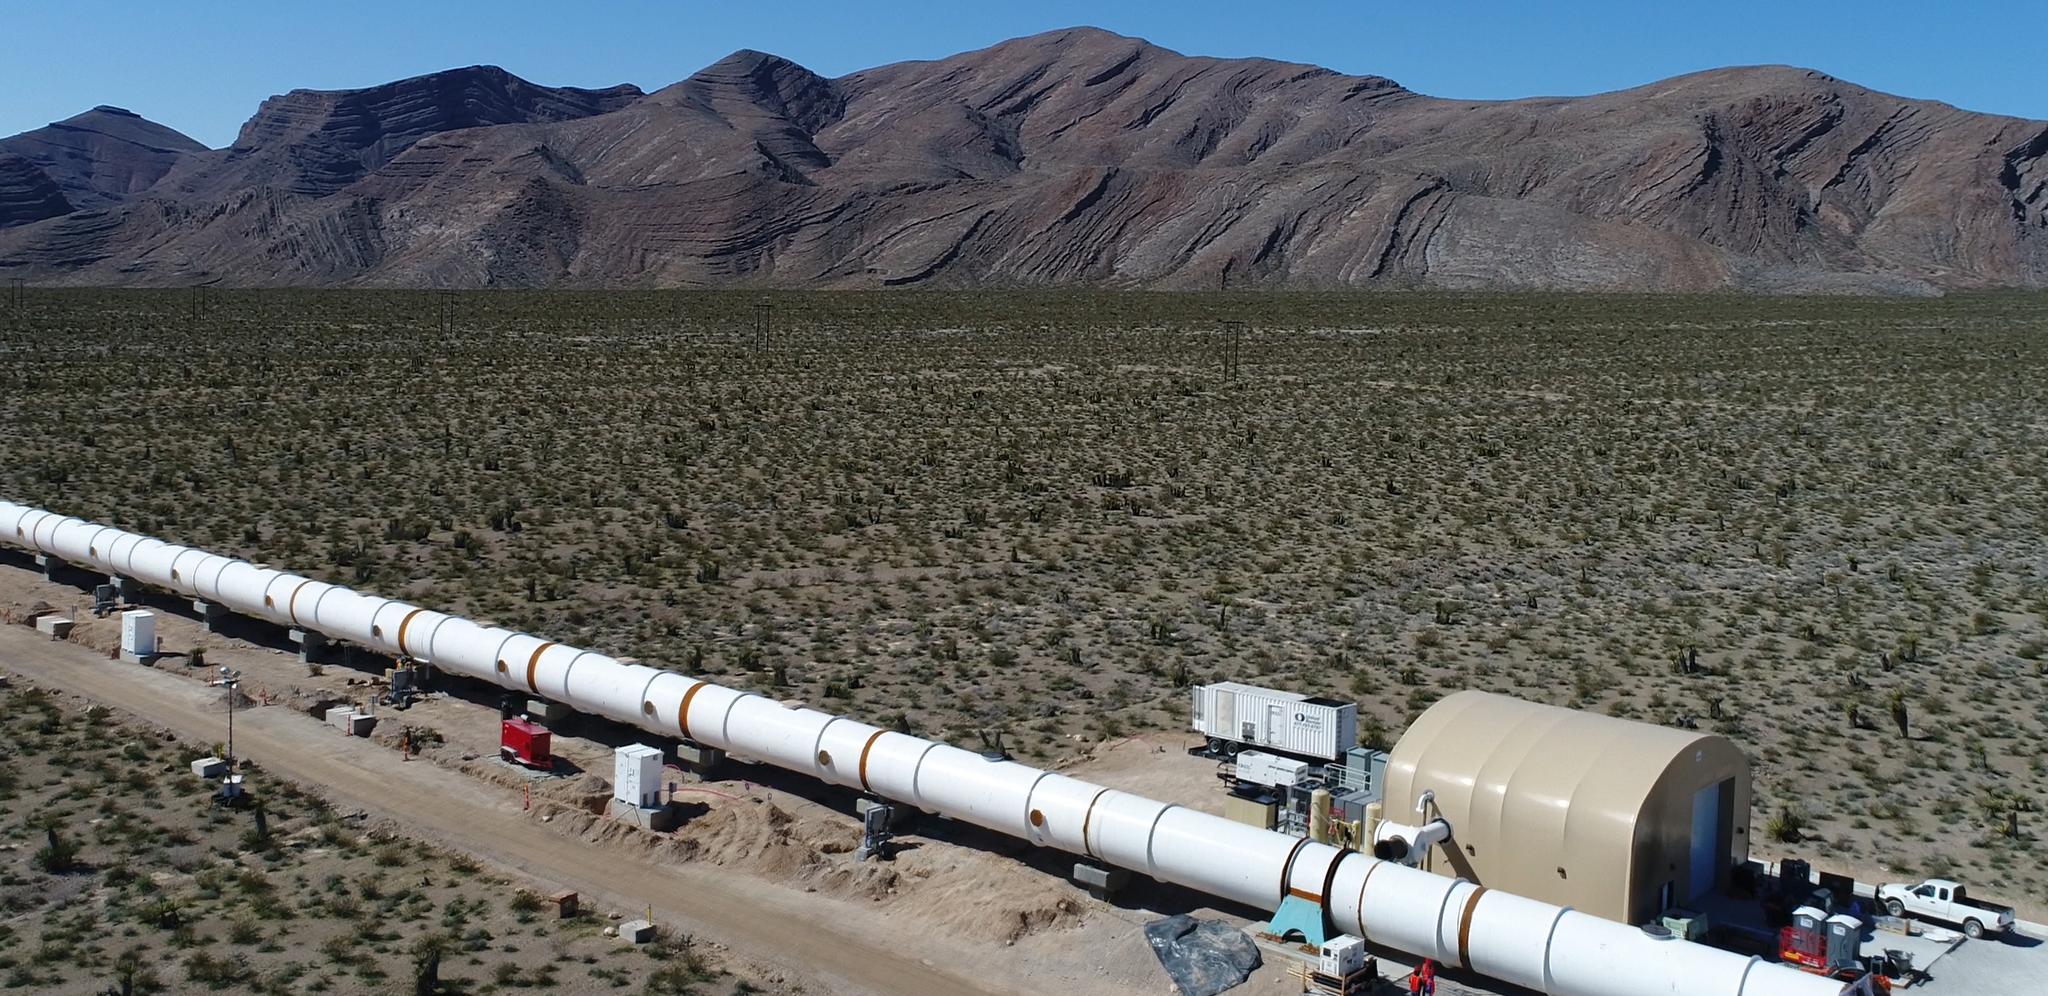 Hyperloop krever en svært rett linje, slik at logistikk og topografi blir utfordrende i Norge. I motsetning til i Las Vegas hvor Virgin Hyperloop One har bygget verdens første testbane, den såkalte Development Loop.